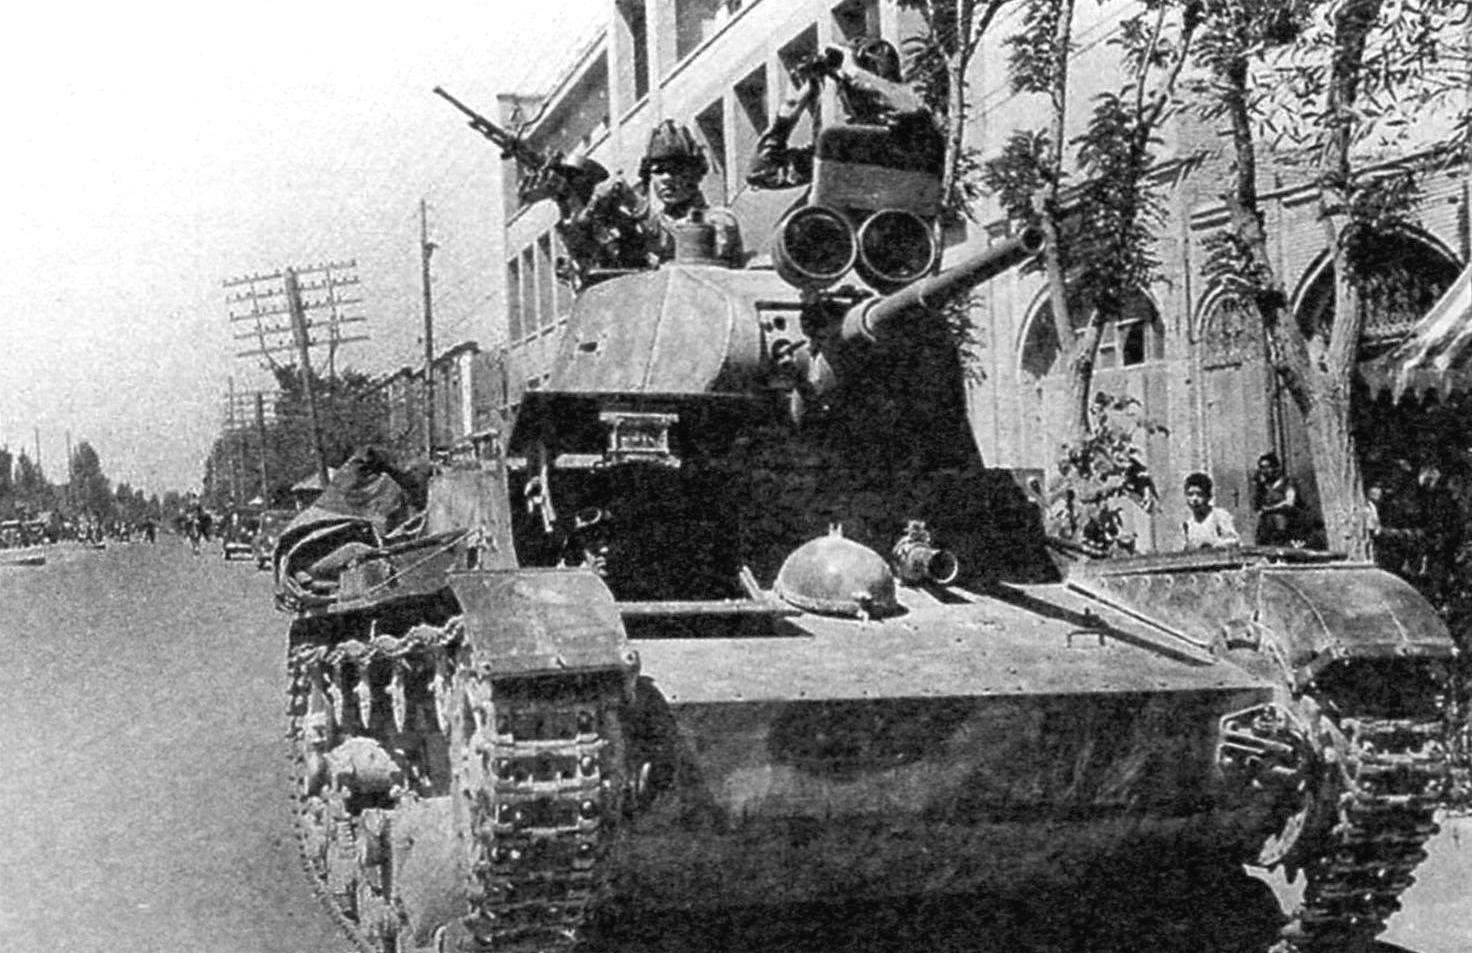 Экипаж Т-26: слева в башне - командир танка, справа - наводчик, в открытом люке - механик-водитель. Над маской пушки установлены фары-прожекторы для ведения боевых действий в ночное время